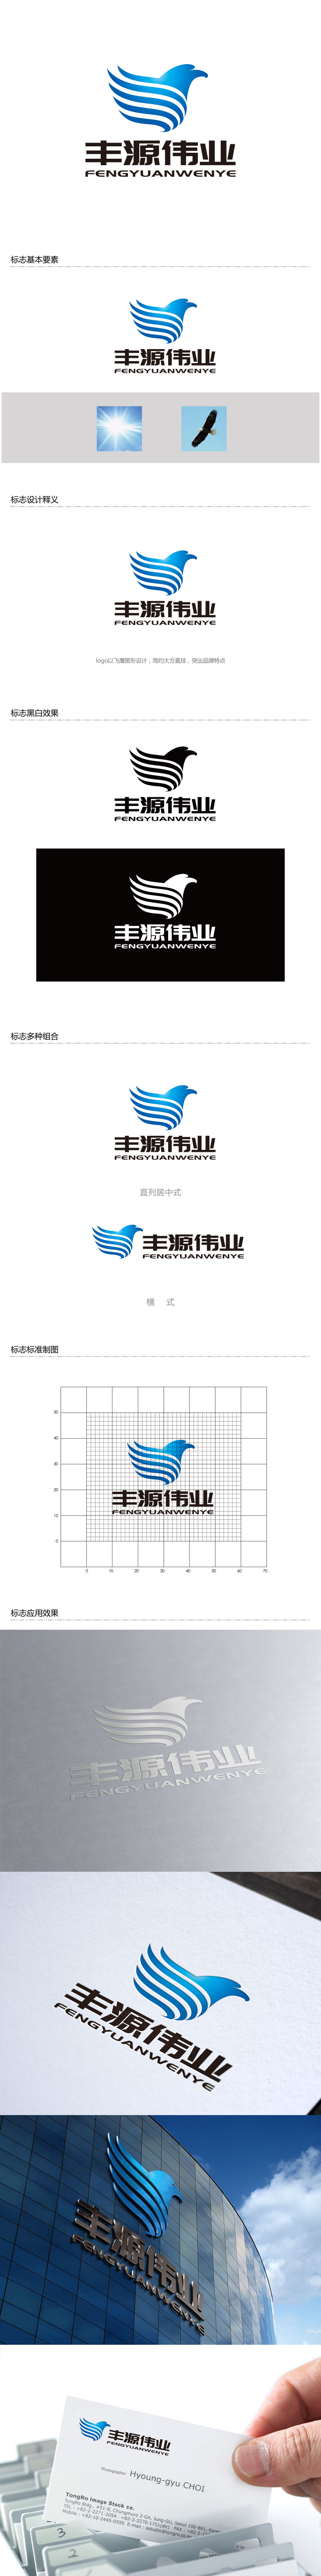 孙金泽的北京丰源伟业建筑装饰工程有限公司logo设计